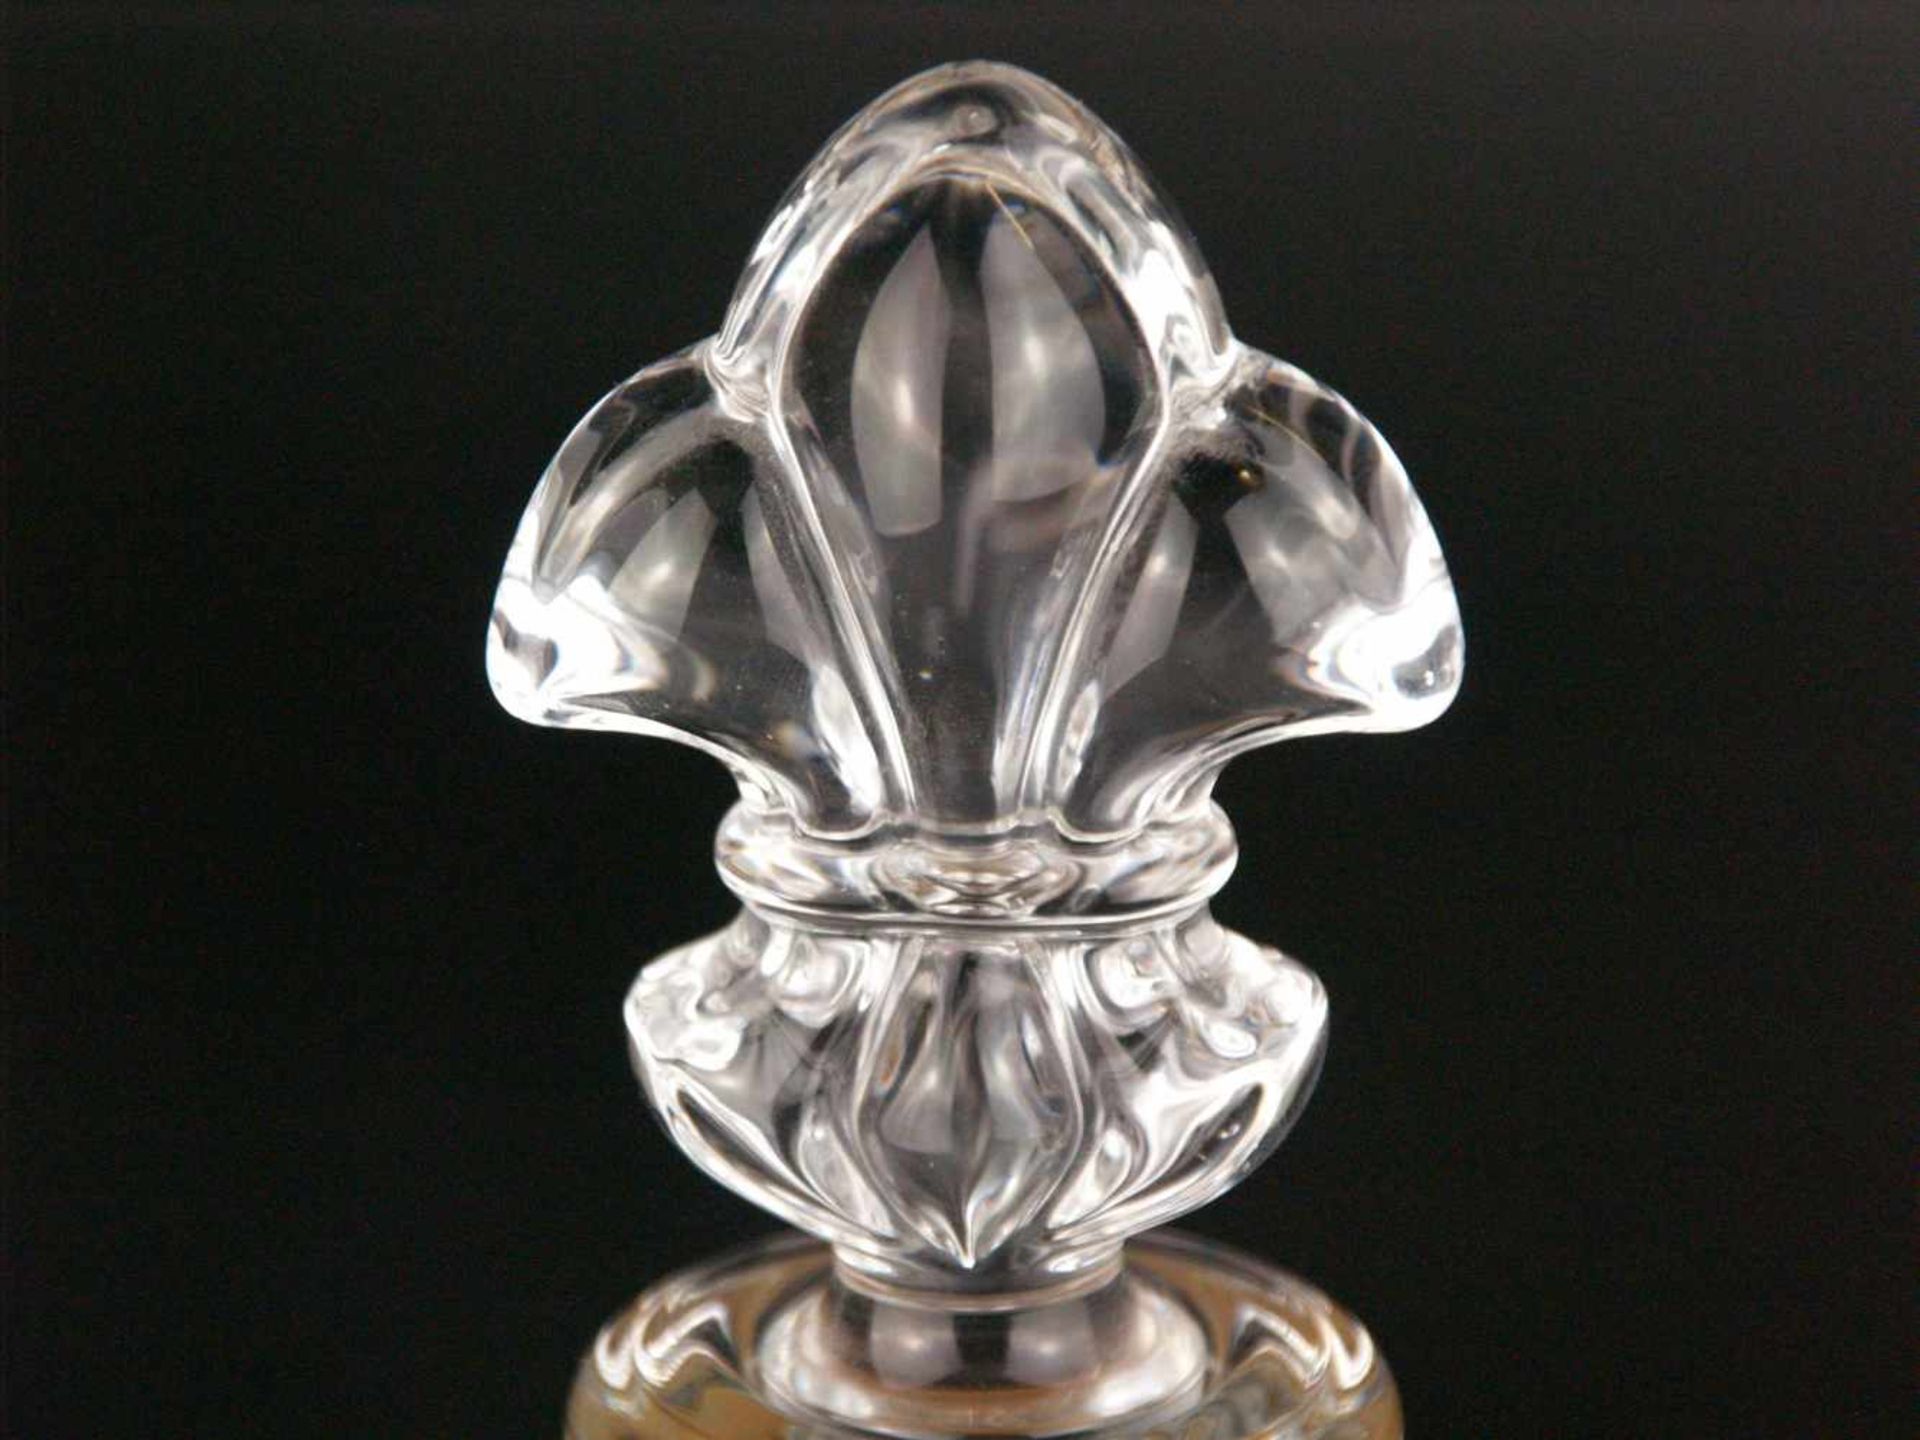 Karaffe -Cristalleries de Baccarat, Frankreich, für Rémy Martin, Cognac, Ritznummer G 2893, Ätzmarke - Bild 2 aus 8